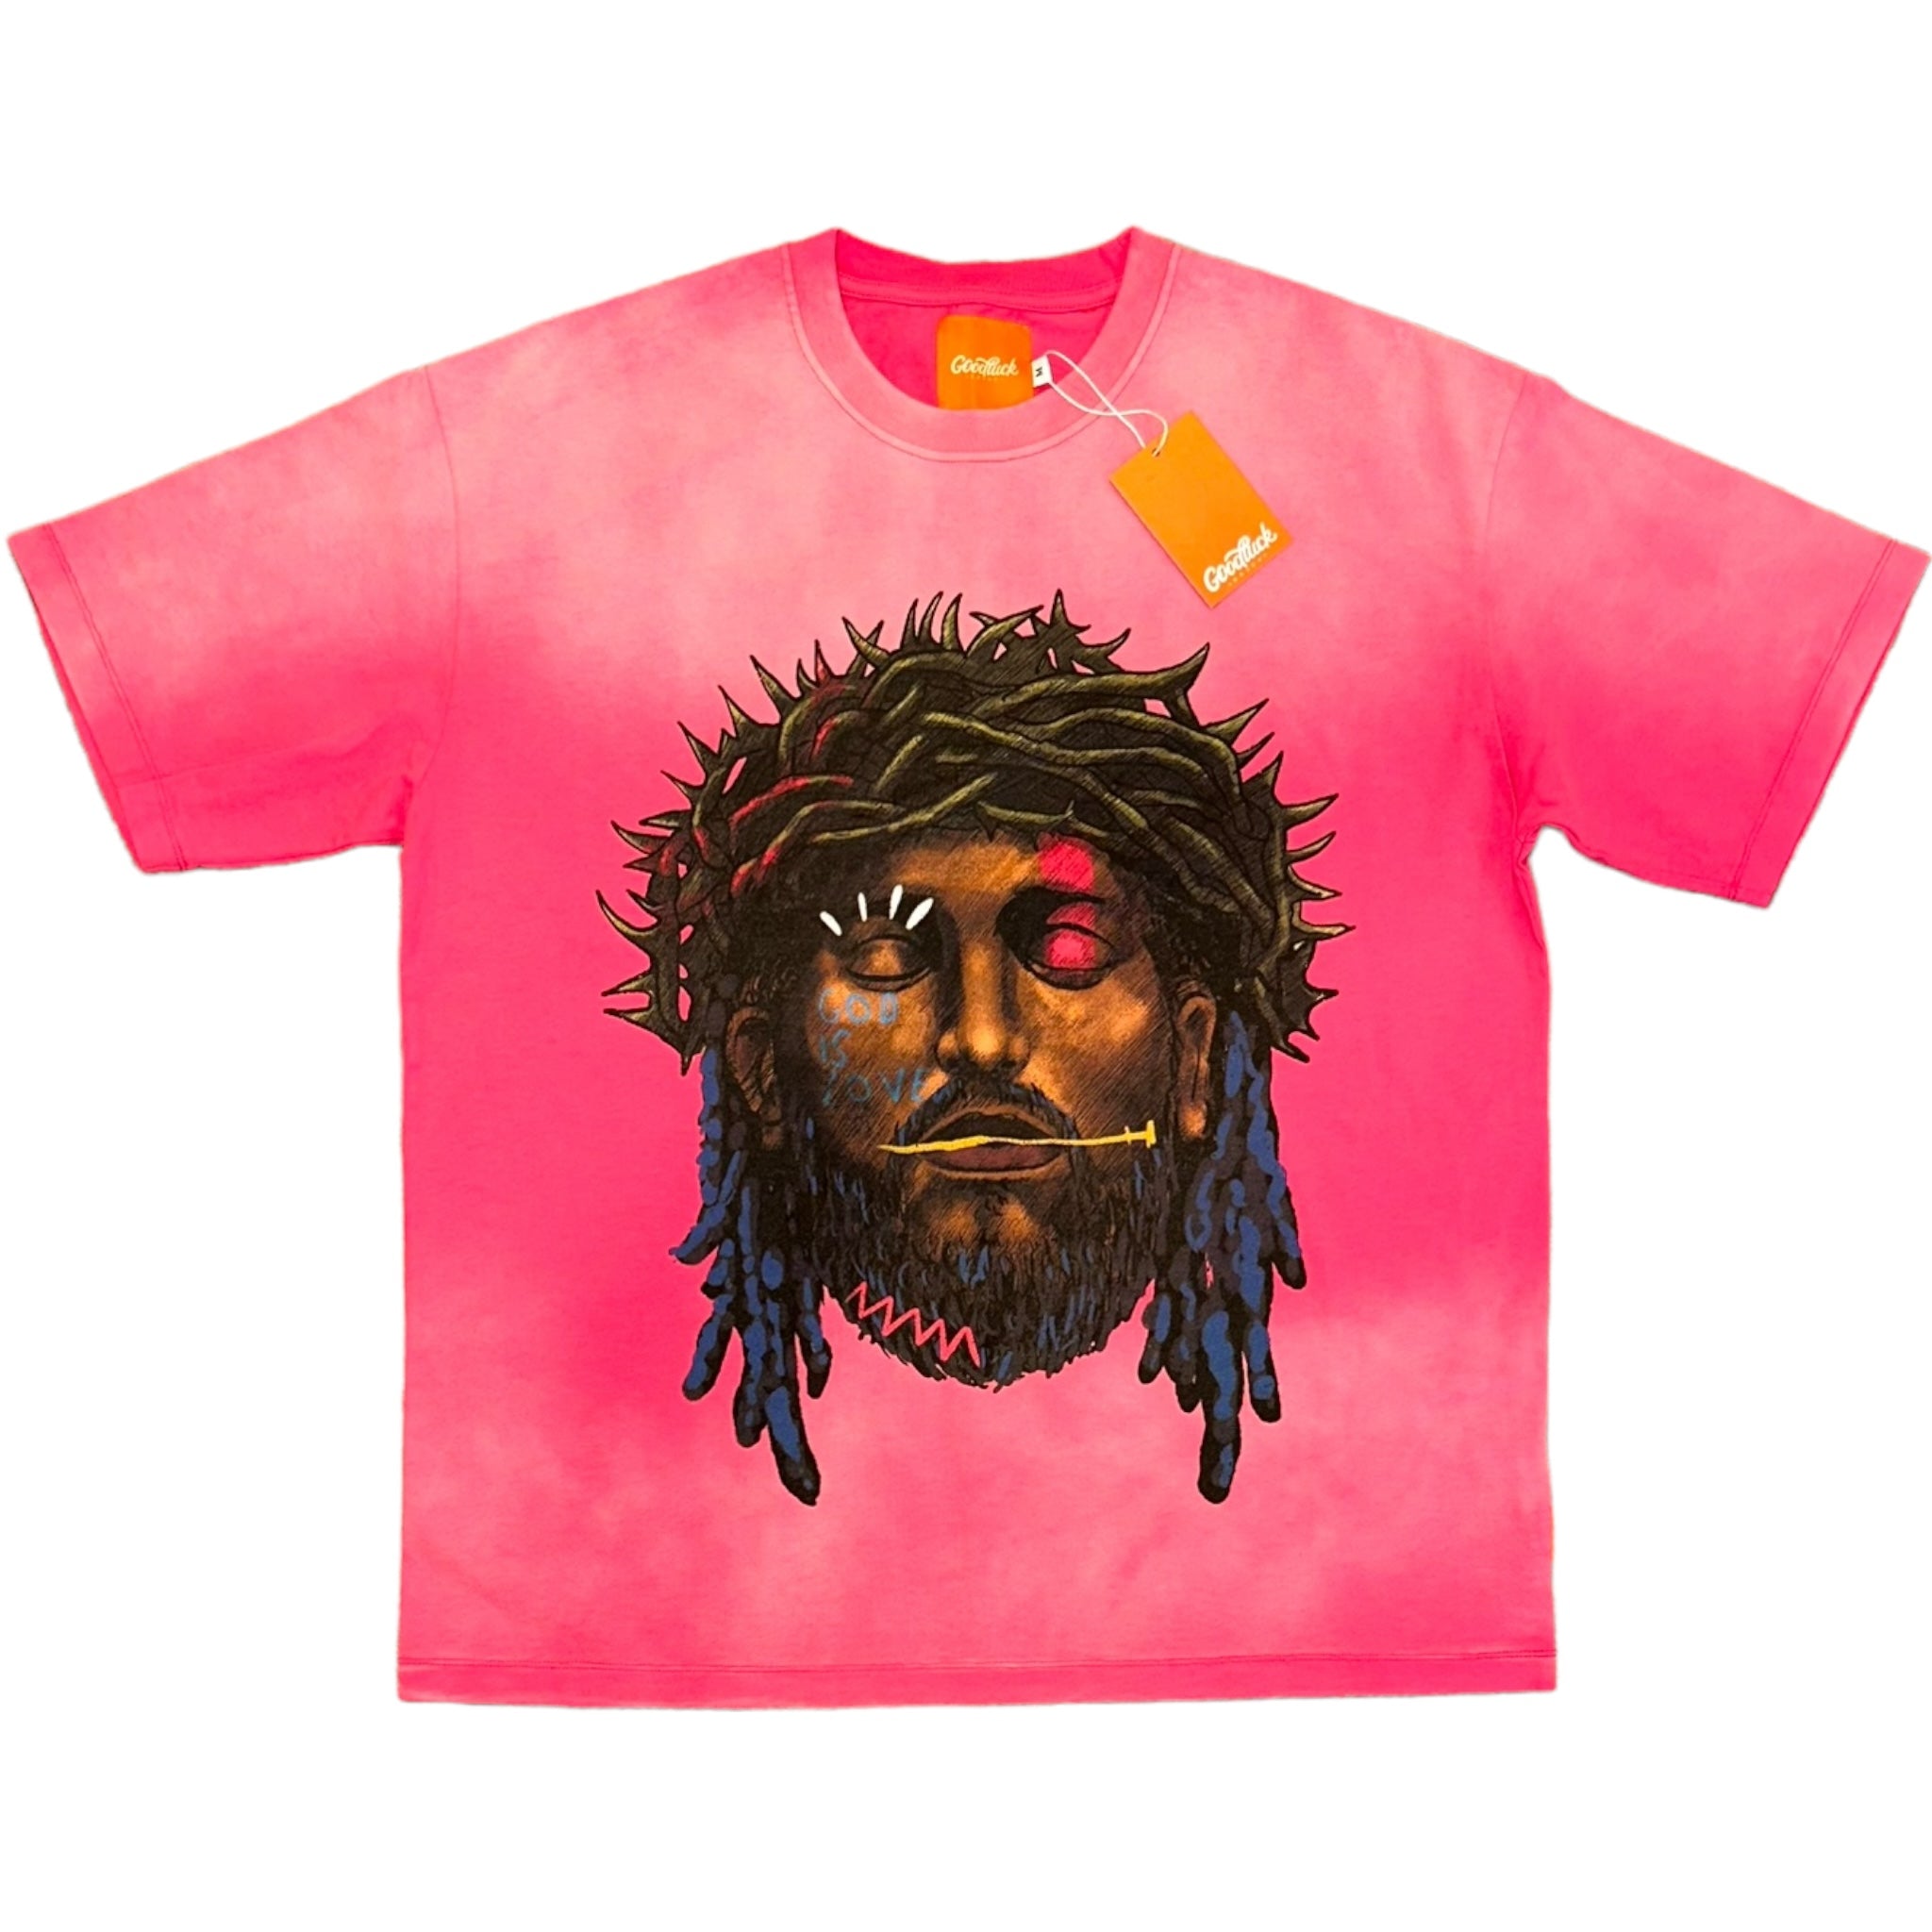 Pink “Black Jesus” T-Shirt